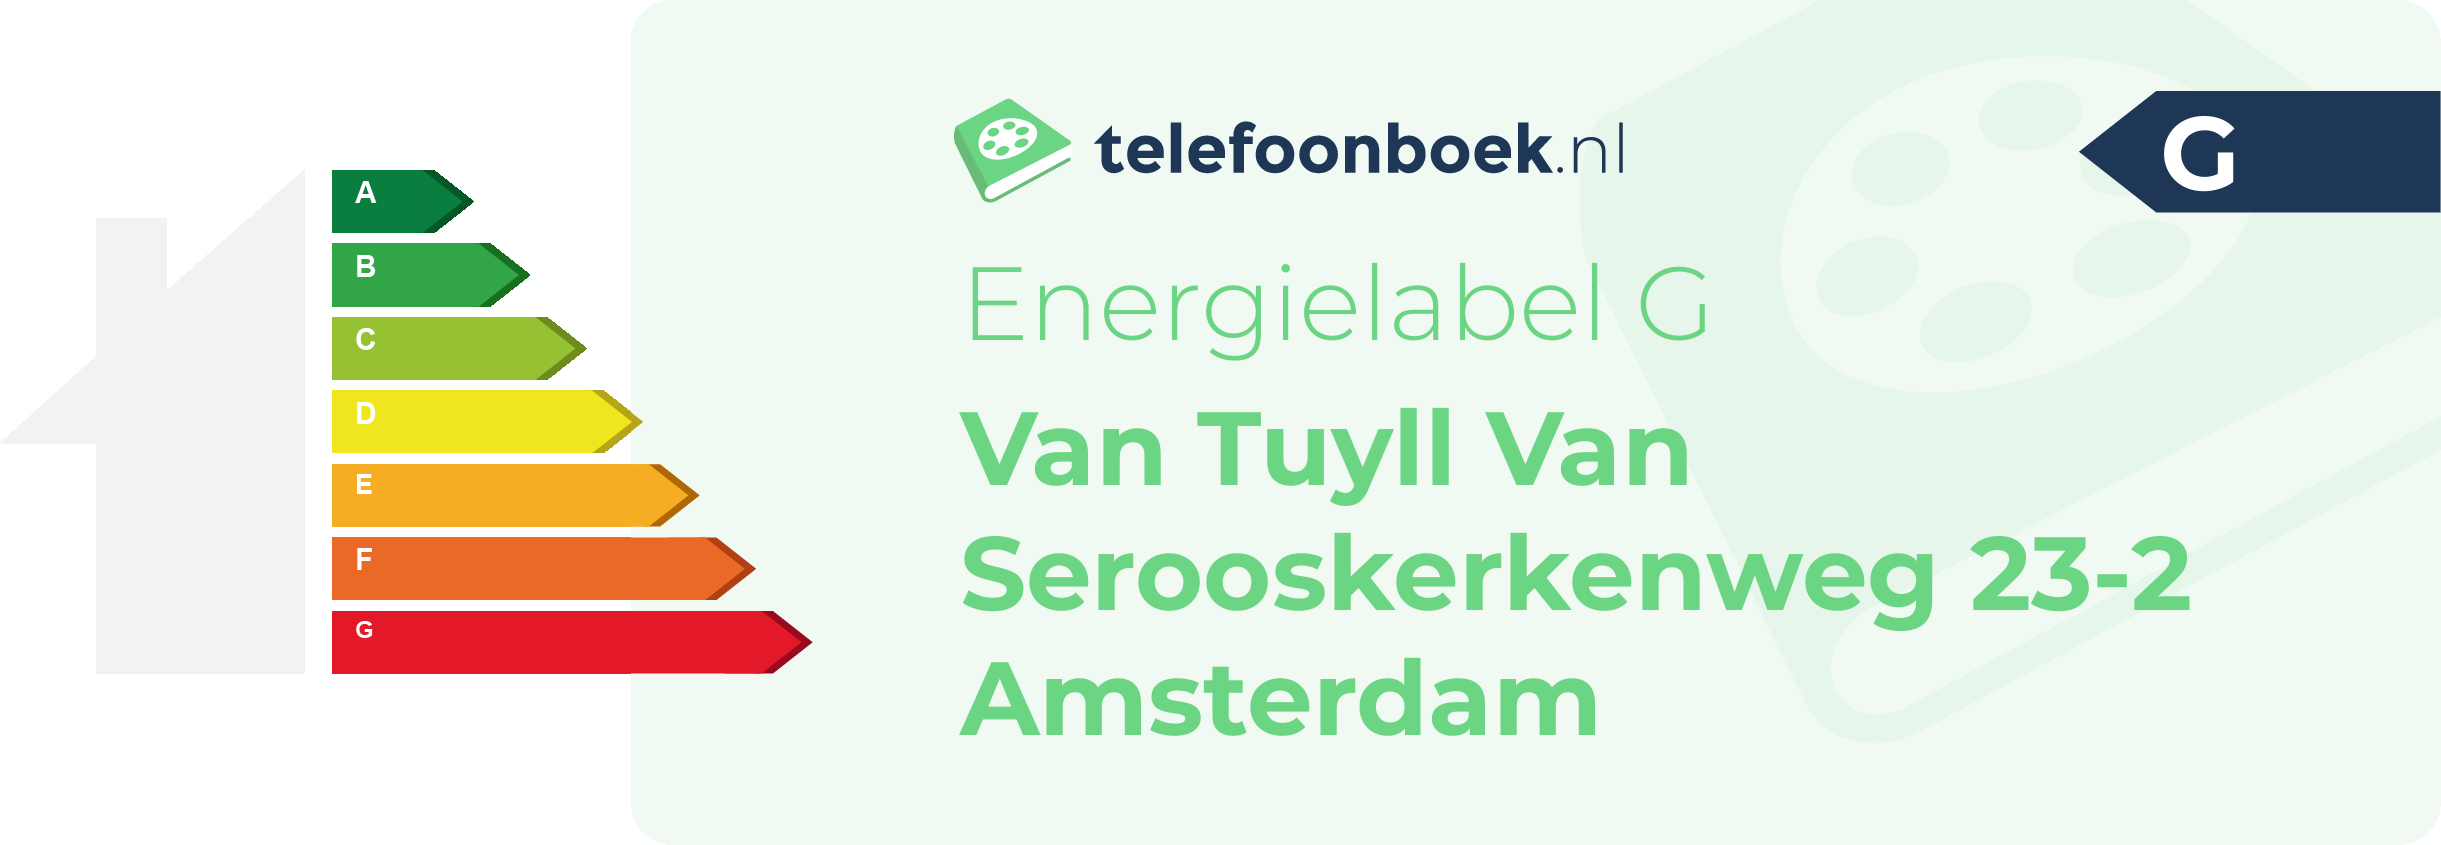 Energielabel Van Tuyll Van Serooskerkenweg 23-2 Amsterdam